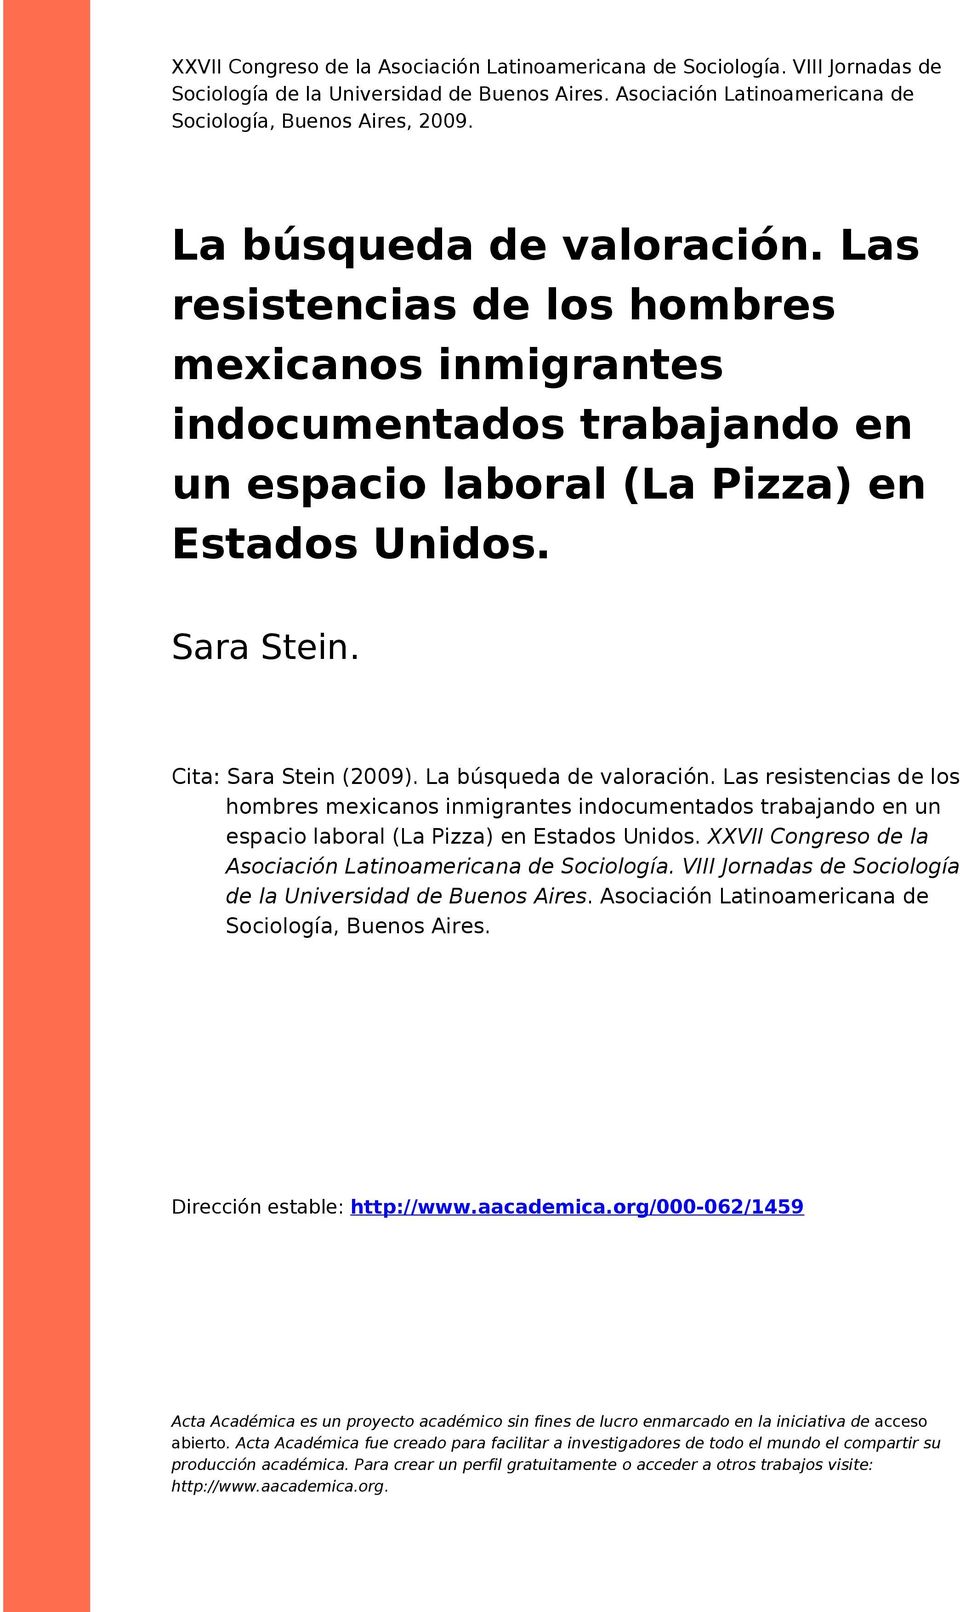 La búsqueda de valoración. Las resistencias de los hombres mexicanos inmigrantes indocumentados trabajando en un espacio laboral (La Pizza) en Estados Unidos.